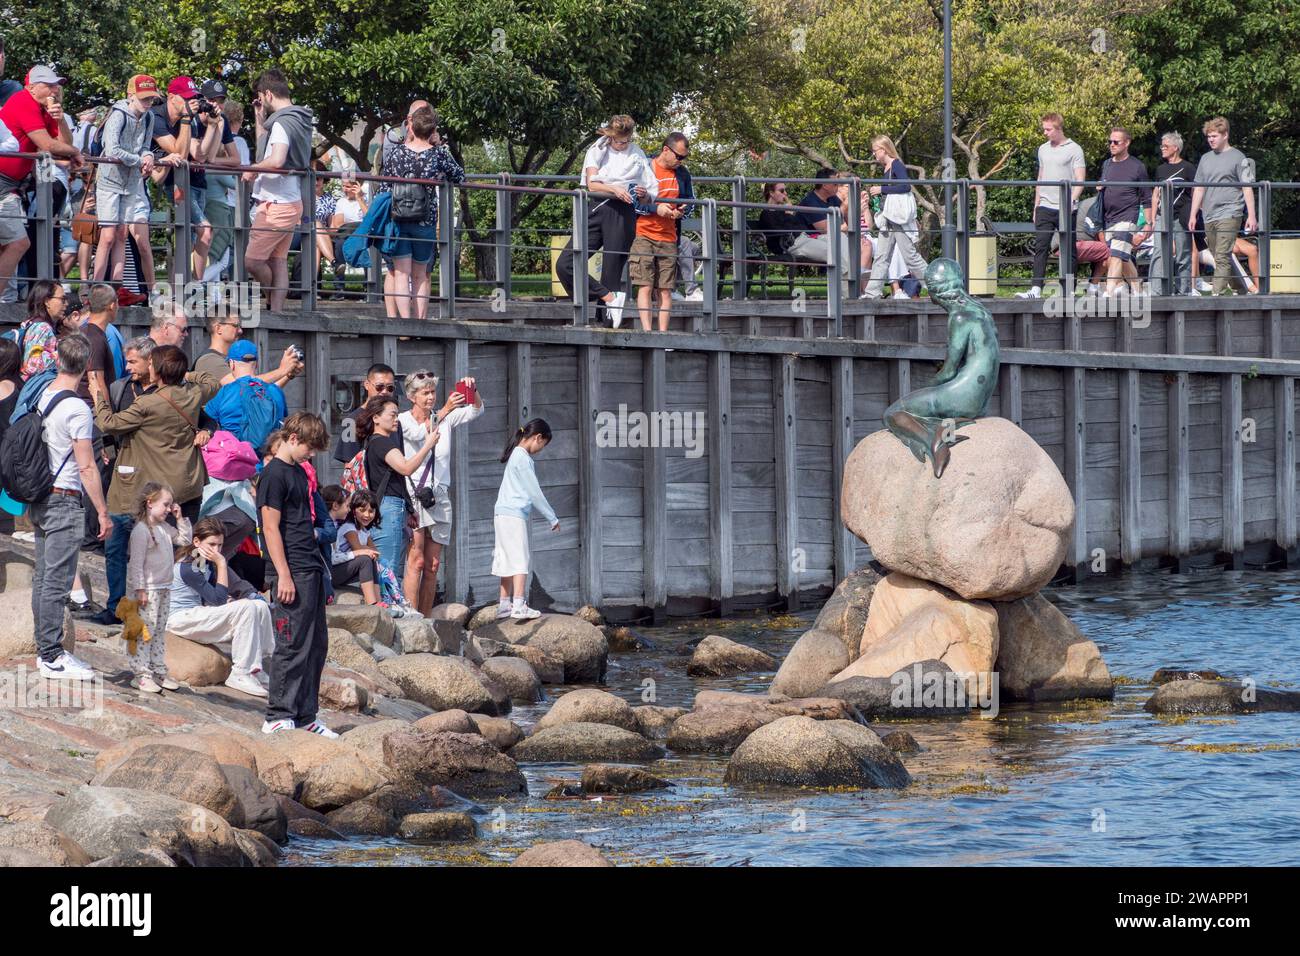 Foules de touristes visitant la sculpture de la petite Sirène (Den Lille Havfrue) au bord de l'eau sur la promenade Langelinie, Copenhague, Danemark. Banque D'Images